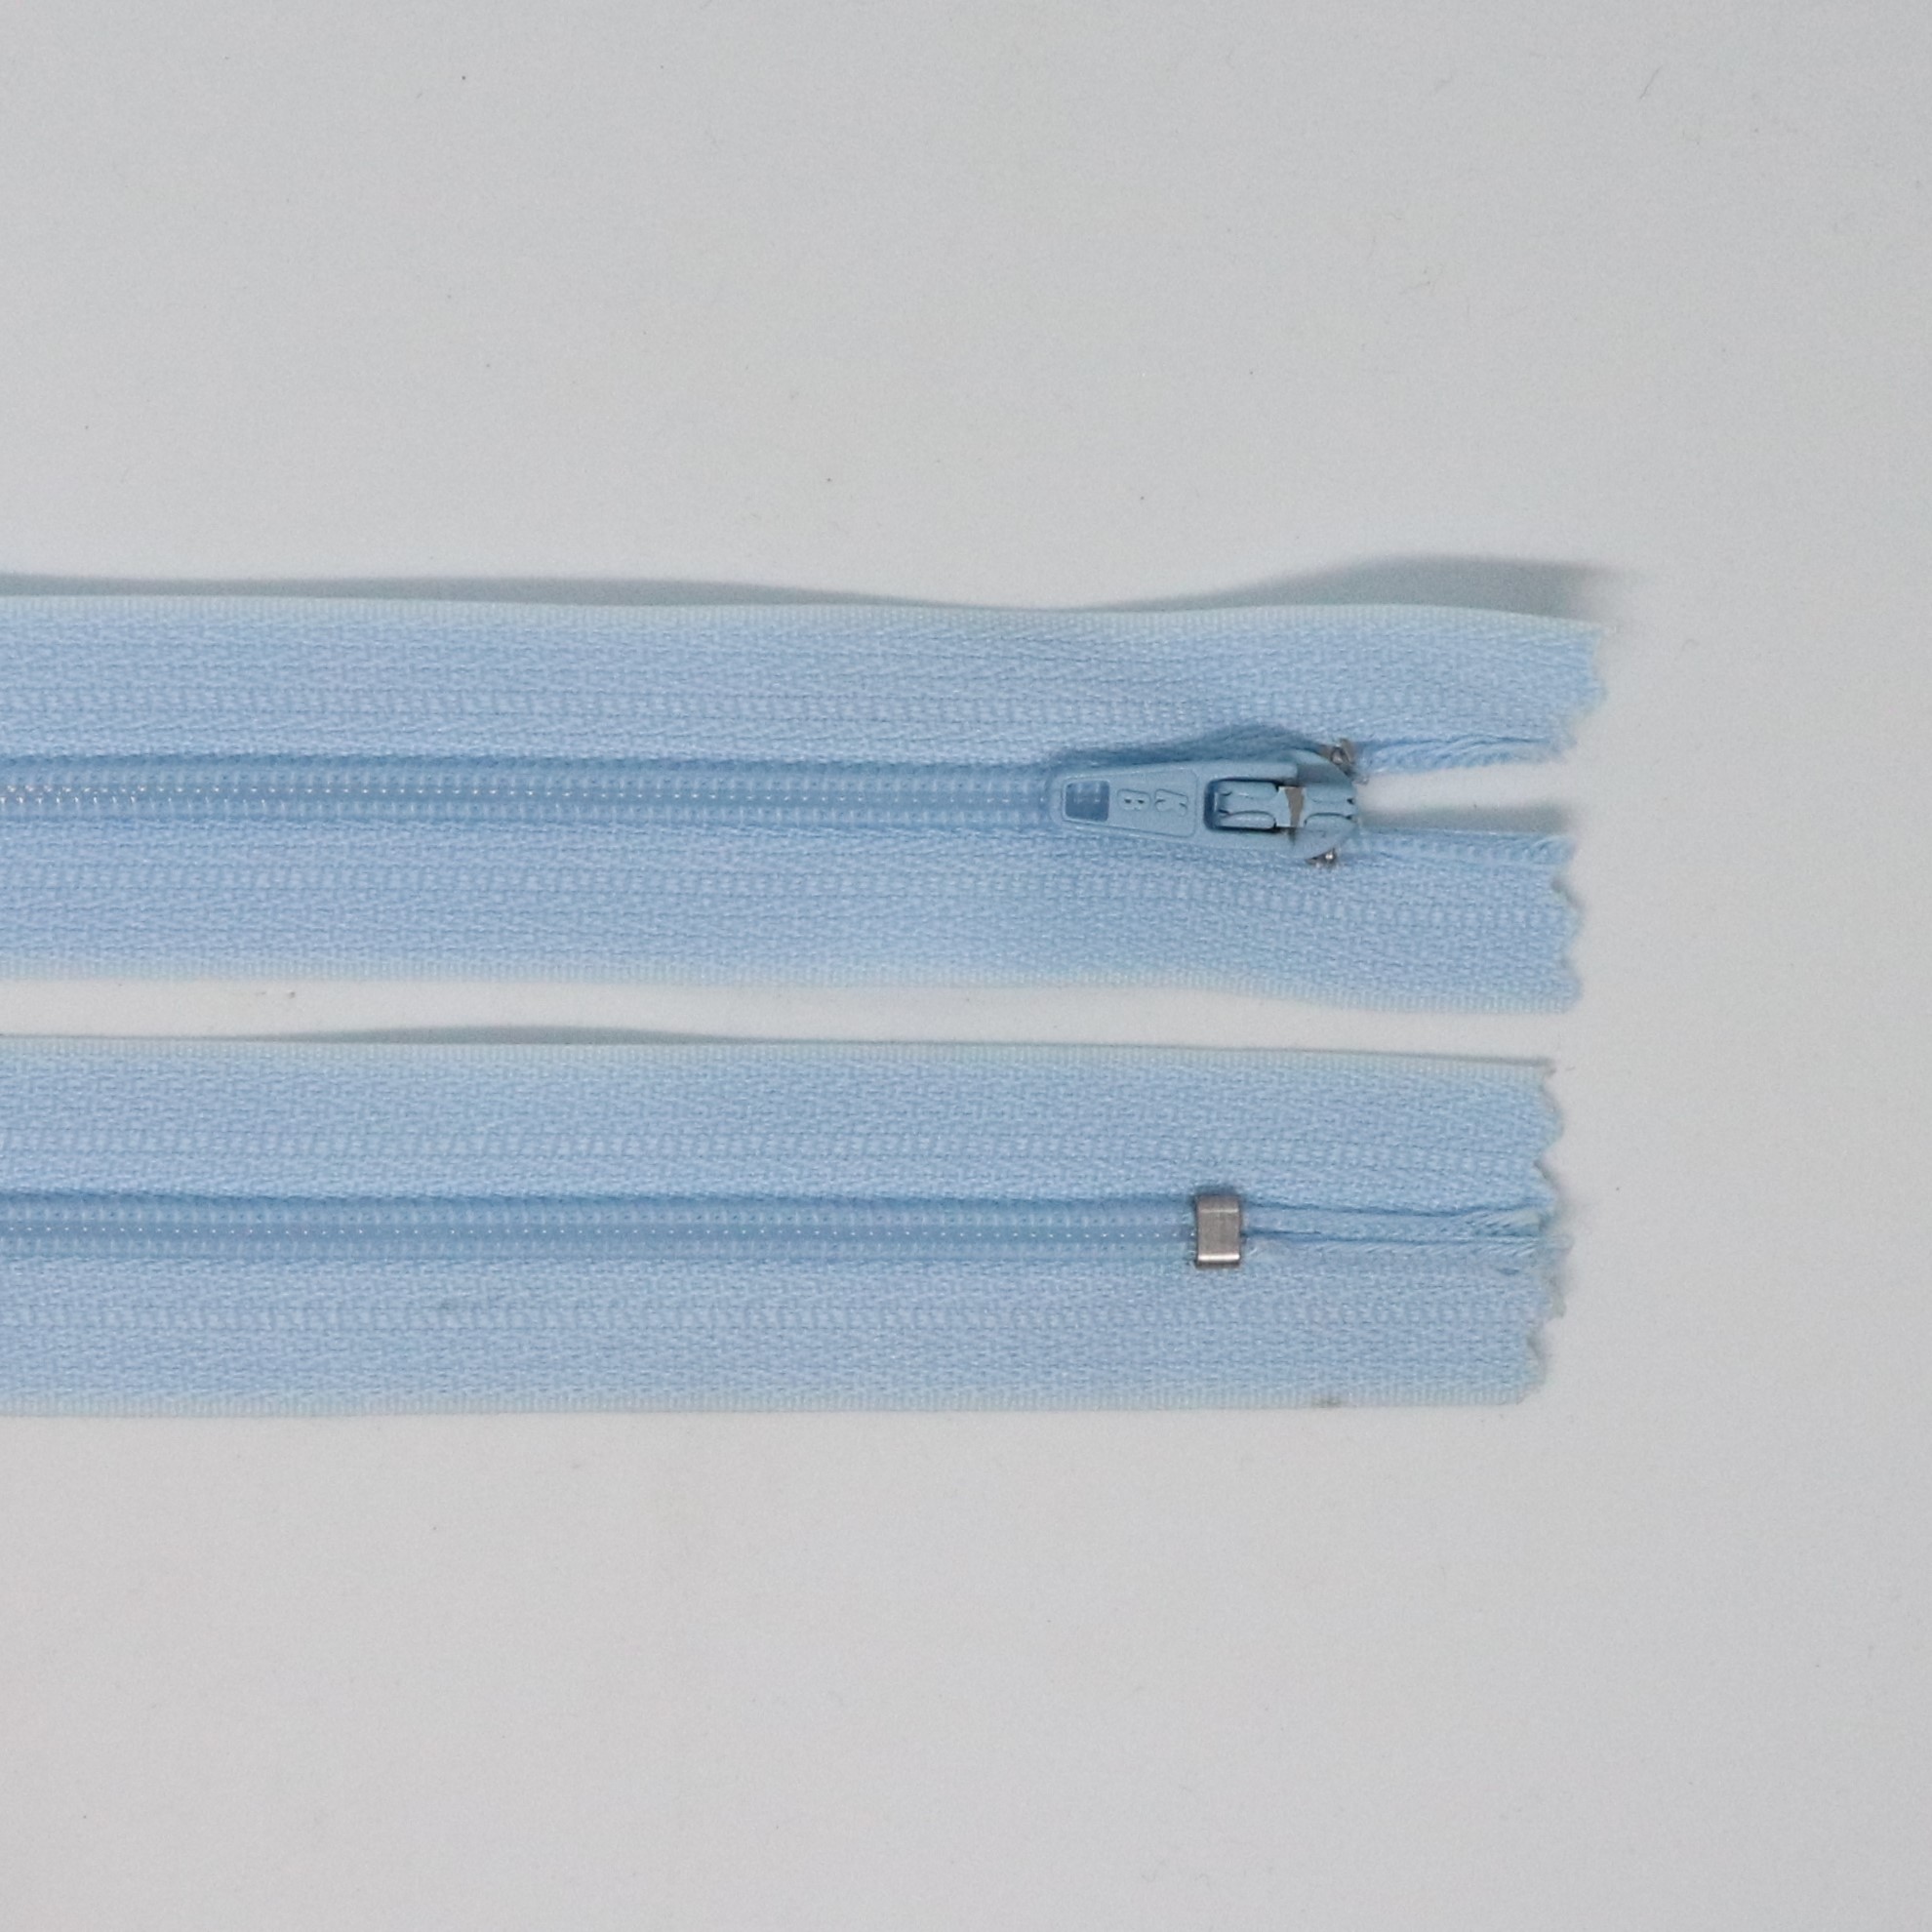 Spirálový zip, šíøe 3 mm, délka 50 cm, svìtle modrá - zvìtšit obrázek